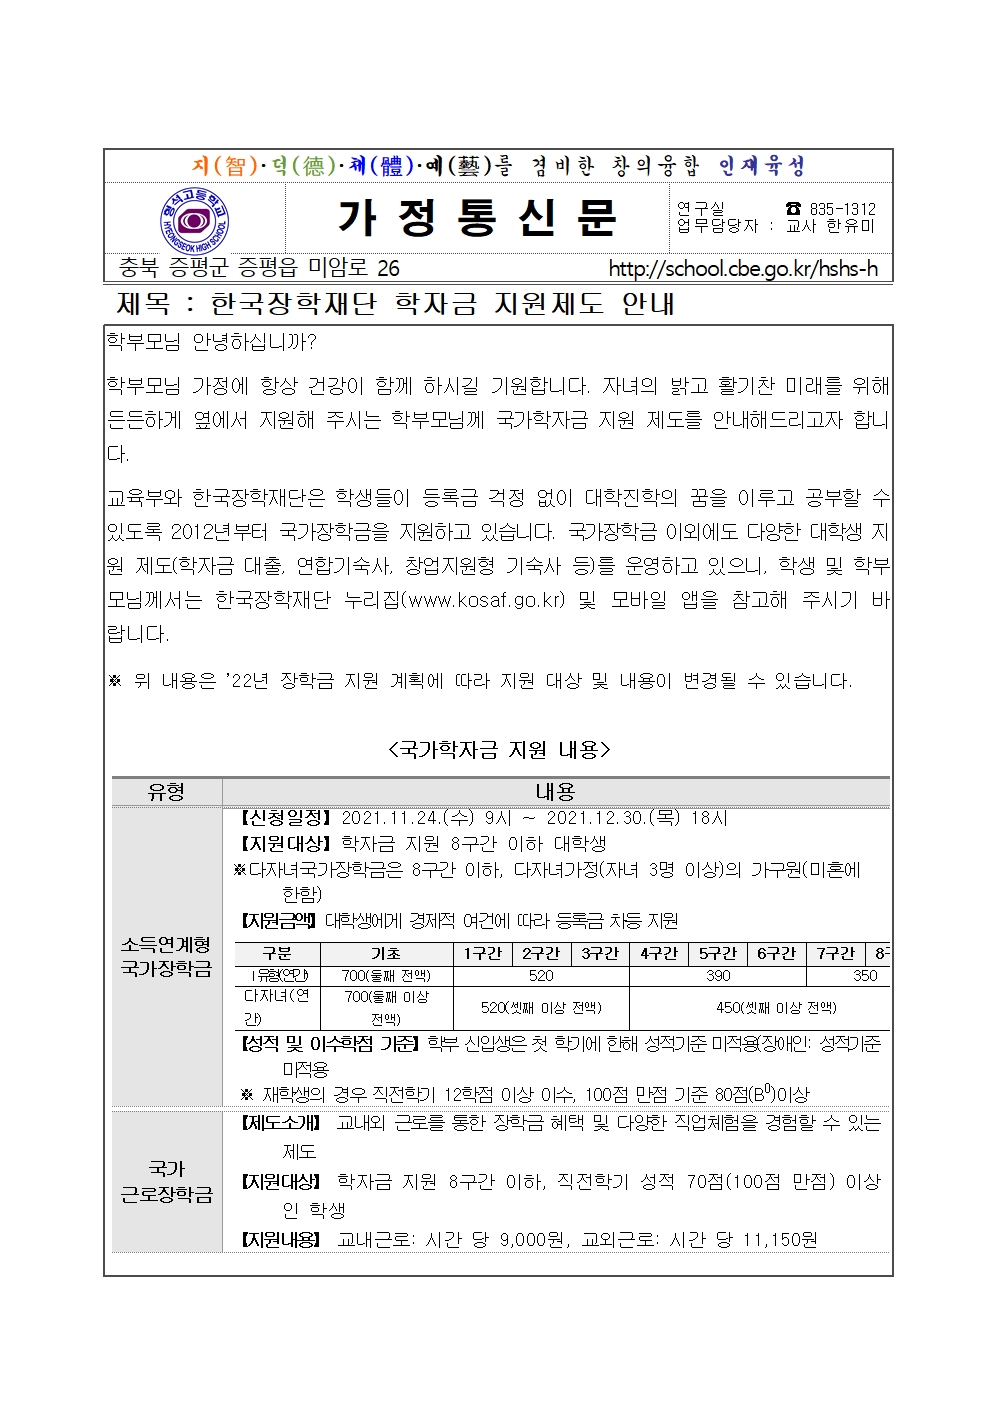 2021. 한국장학재단 학자금 지원제도 안내001